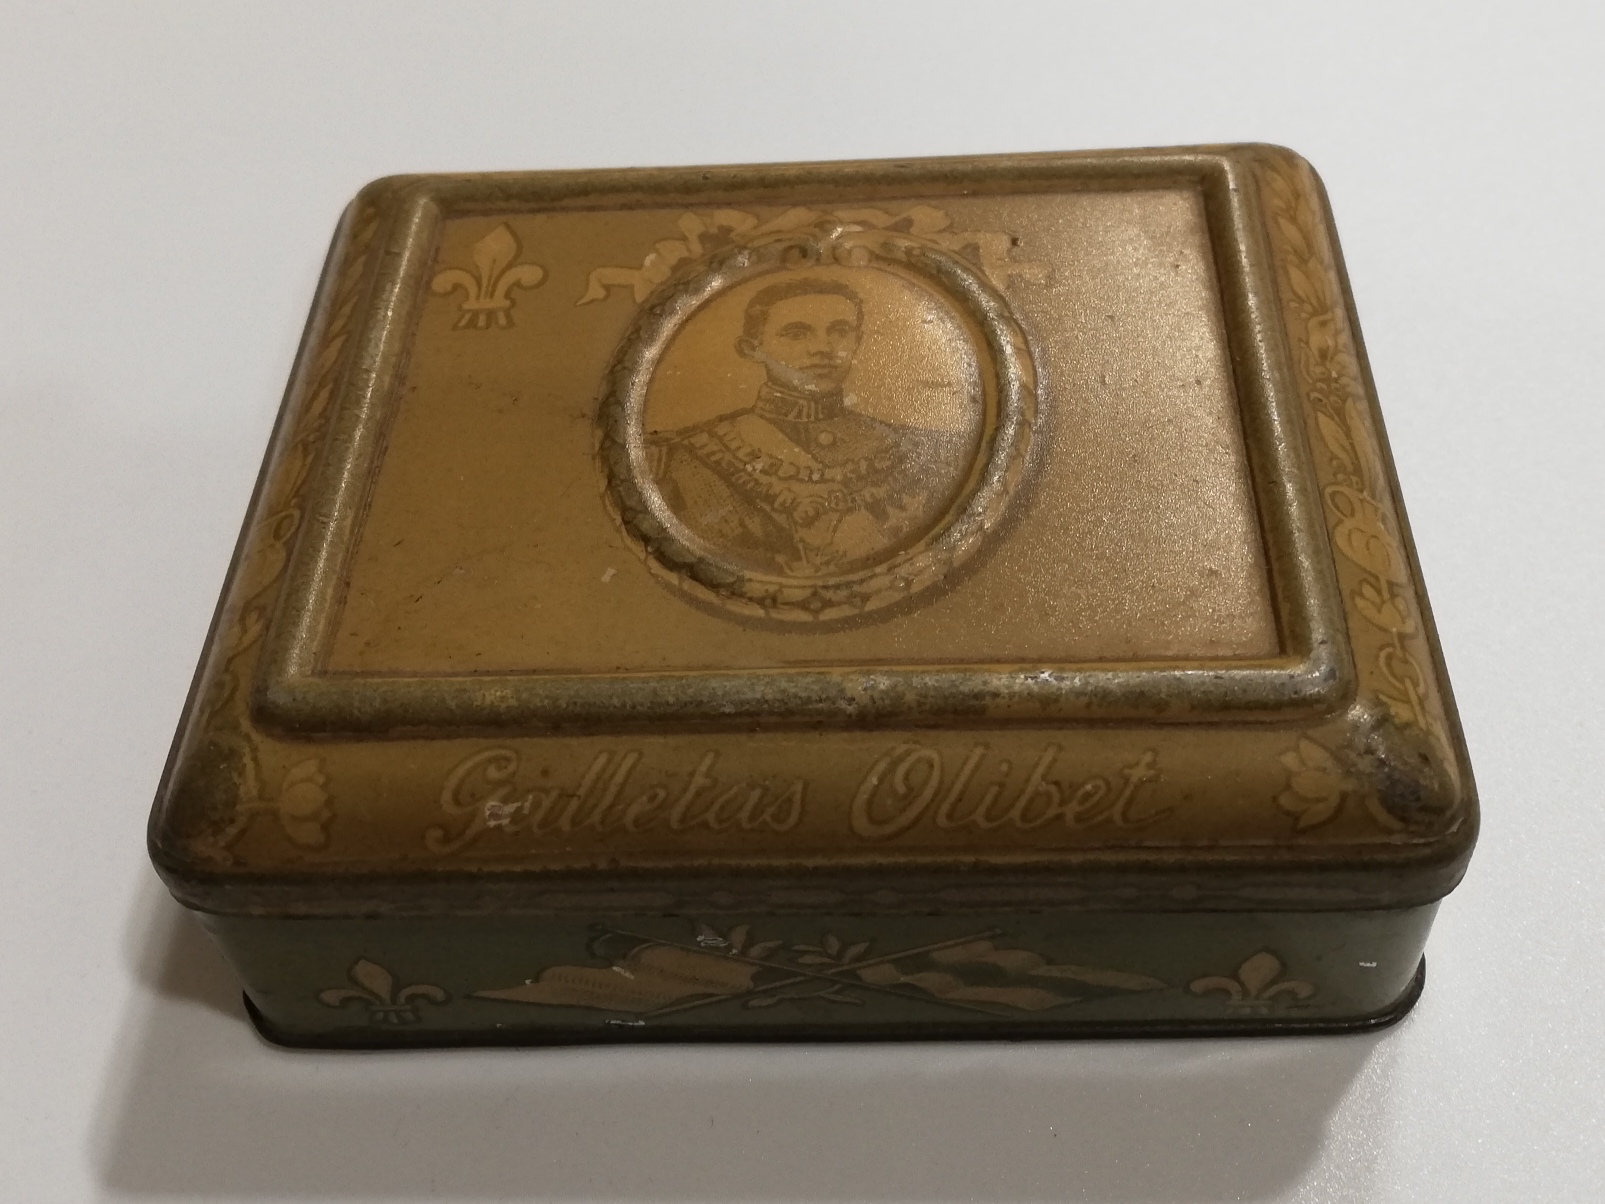 Antigua y bonita caja metálica de Galletas Olibet (Busto de Alfonso XIII)